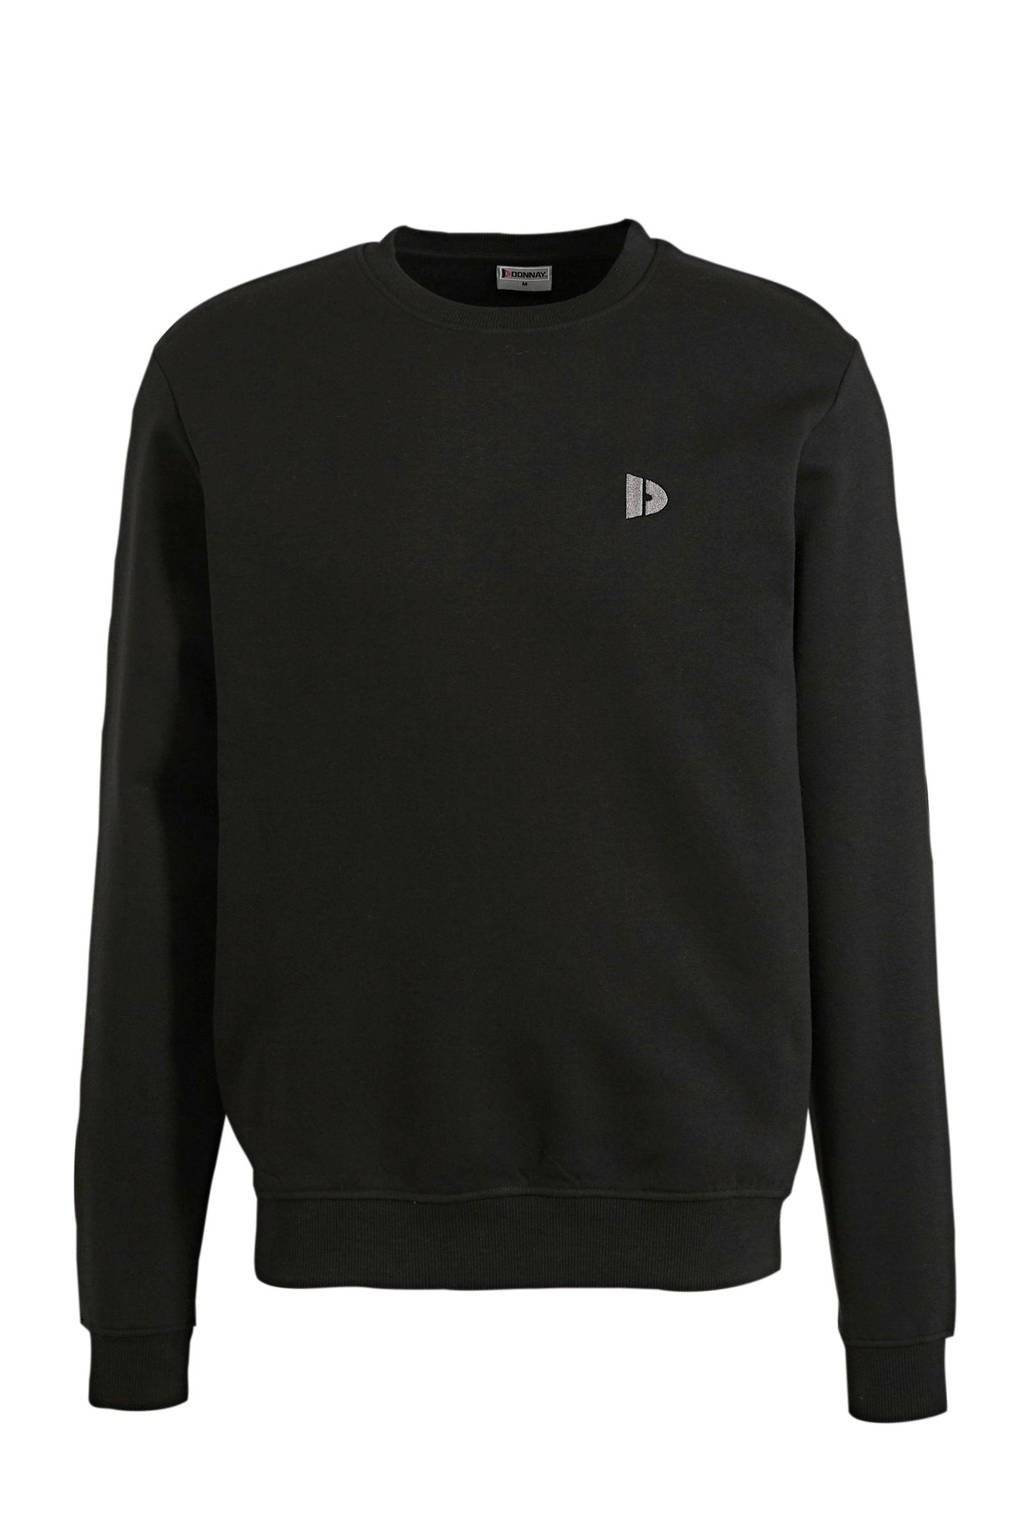 Zwarte heren Donnay sportsweater van polyester met logo dessin, lange mouwen en ronde hals